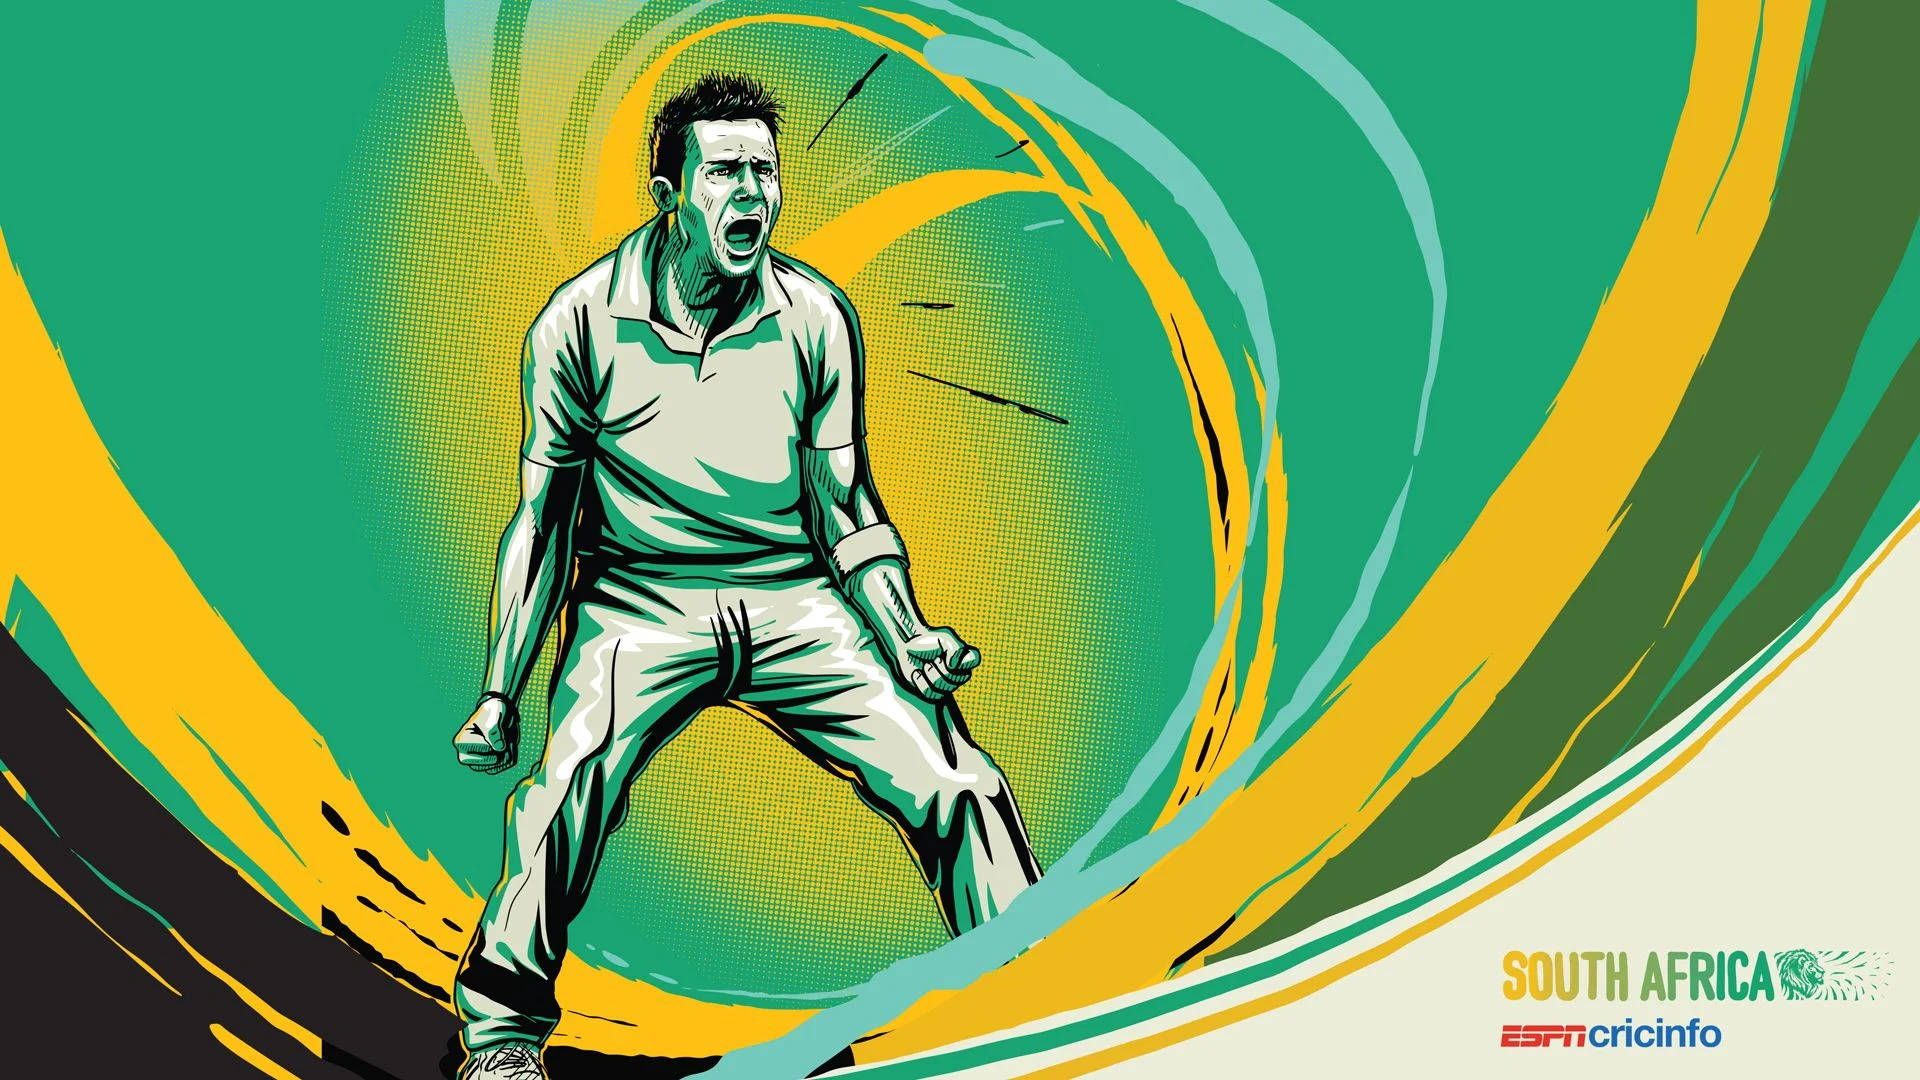 South Africa Cricket Digital Art Wallpaper